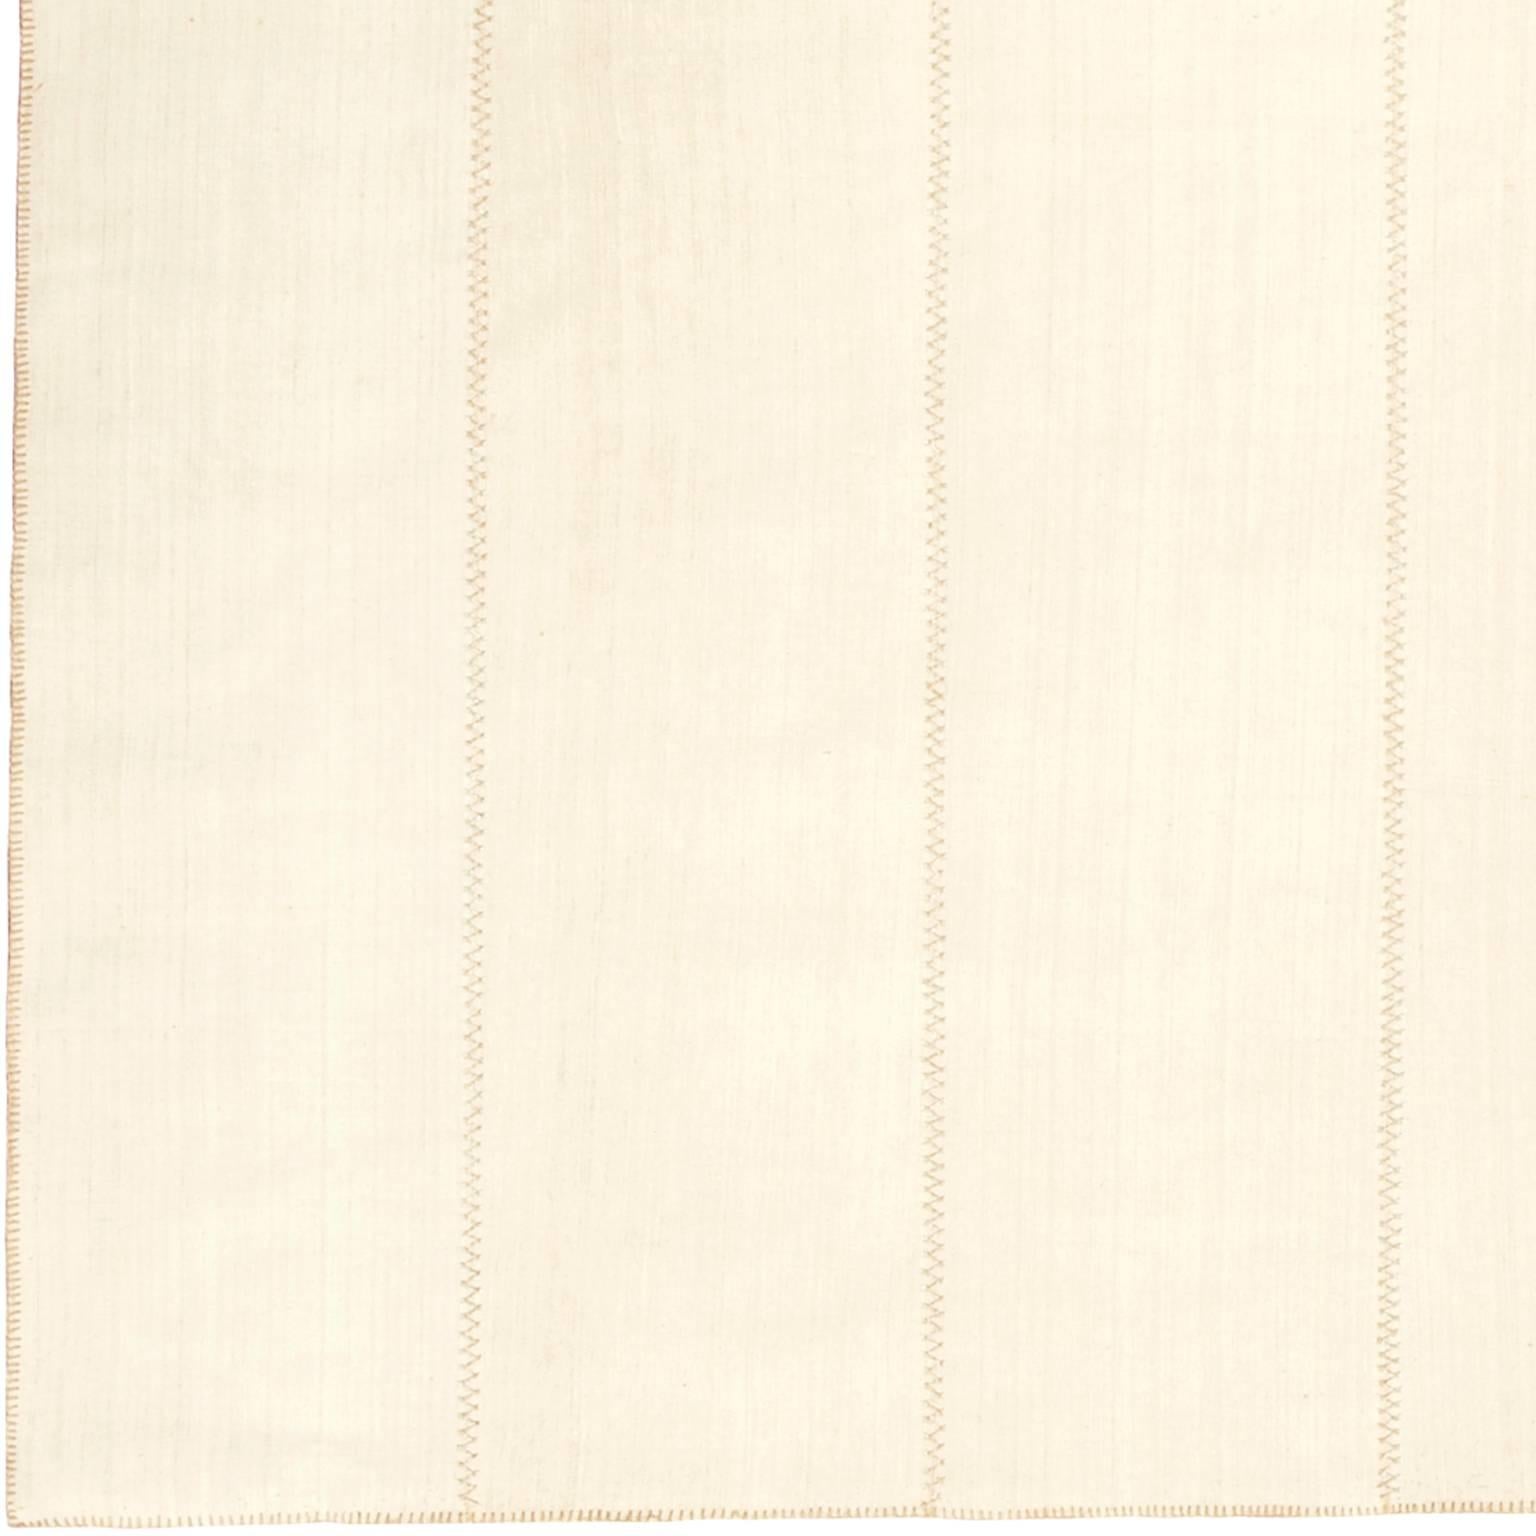 Vintage Kilim Komposition, lineares Design.
Lineares Design mit grau/cremefarbenen Leinen- und Baumwollbahnen und silbernen Nähten.
Türkische Tafeln, um 1940.
Handgewebt.